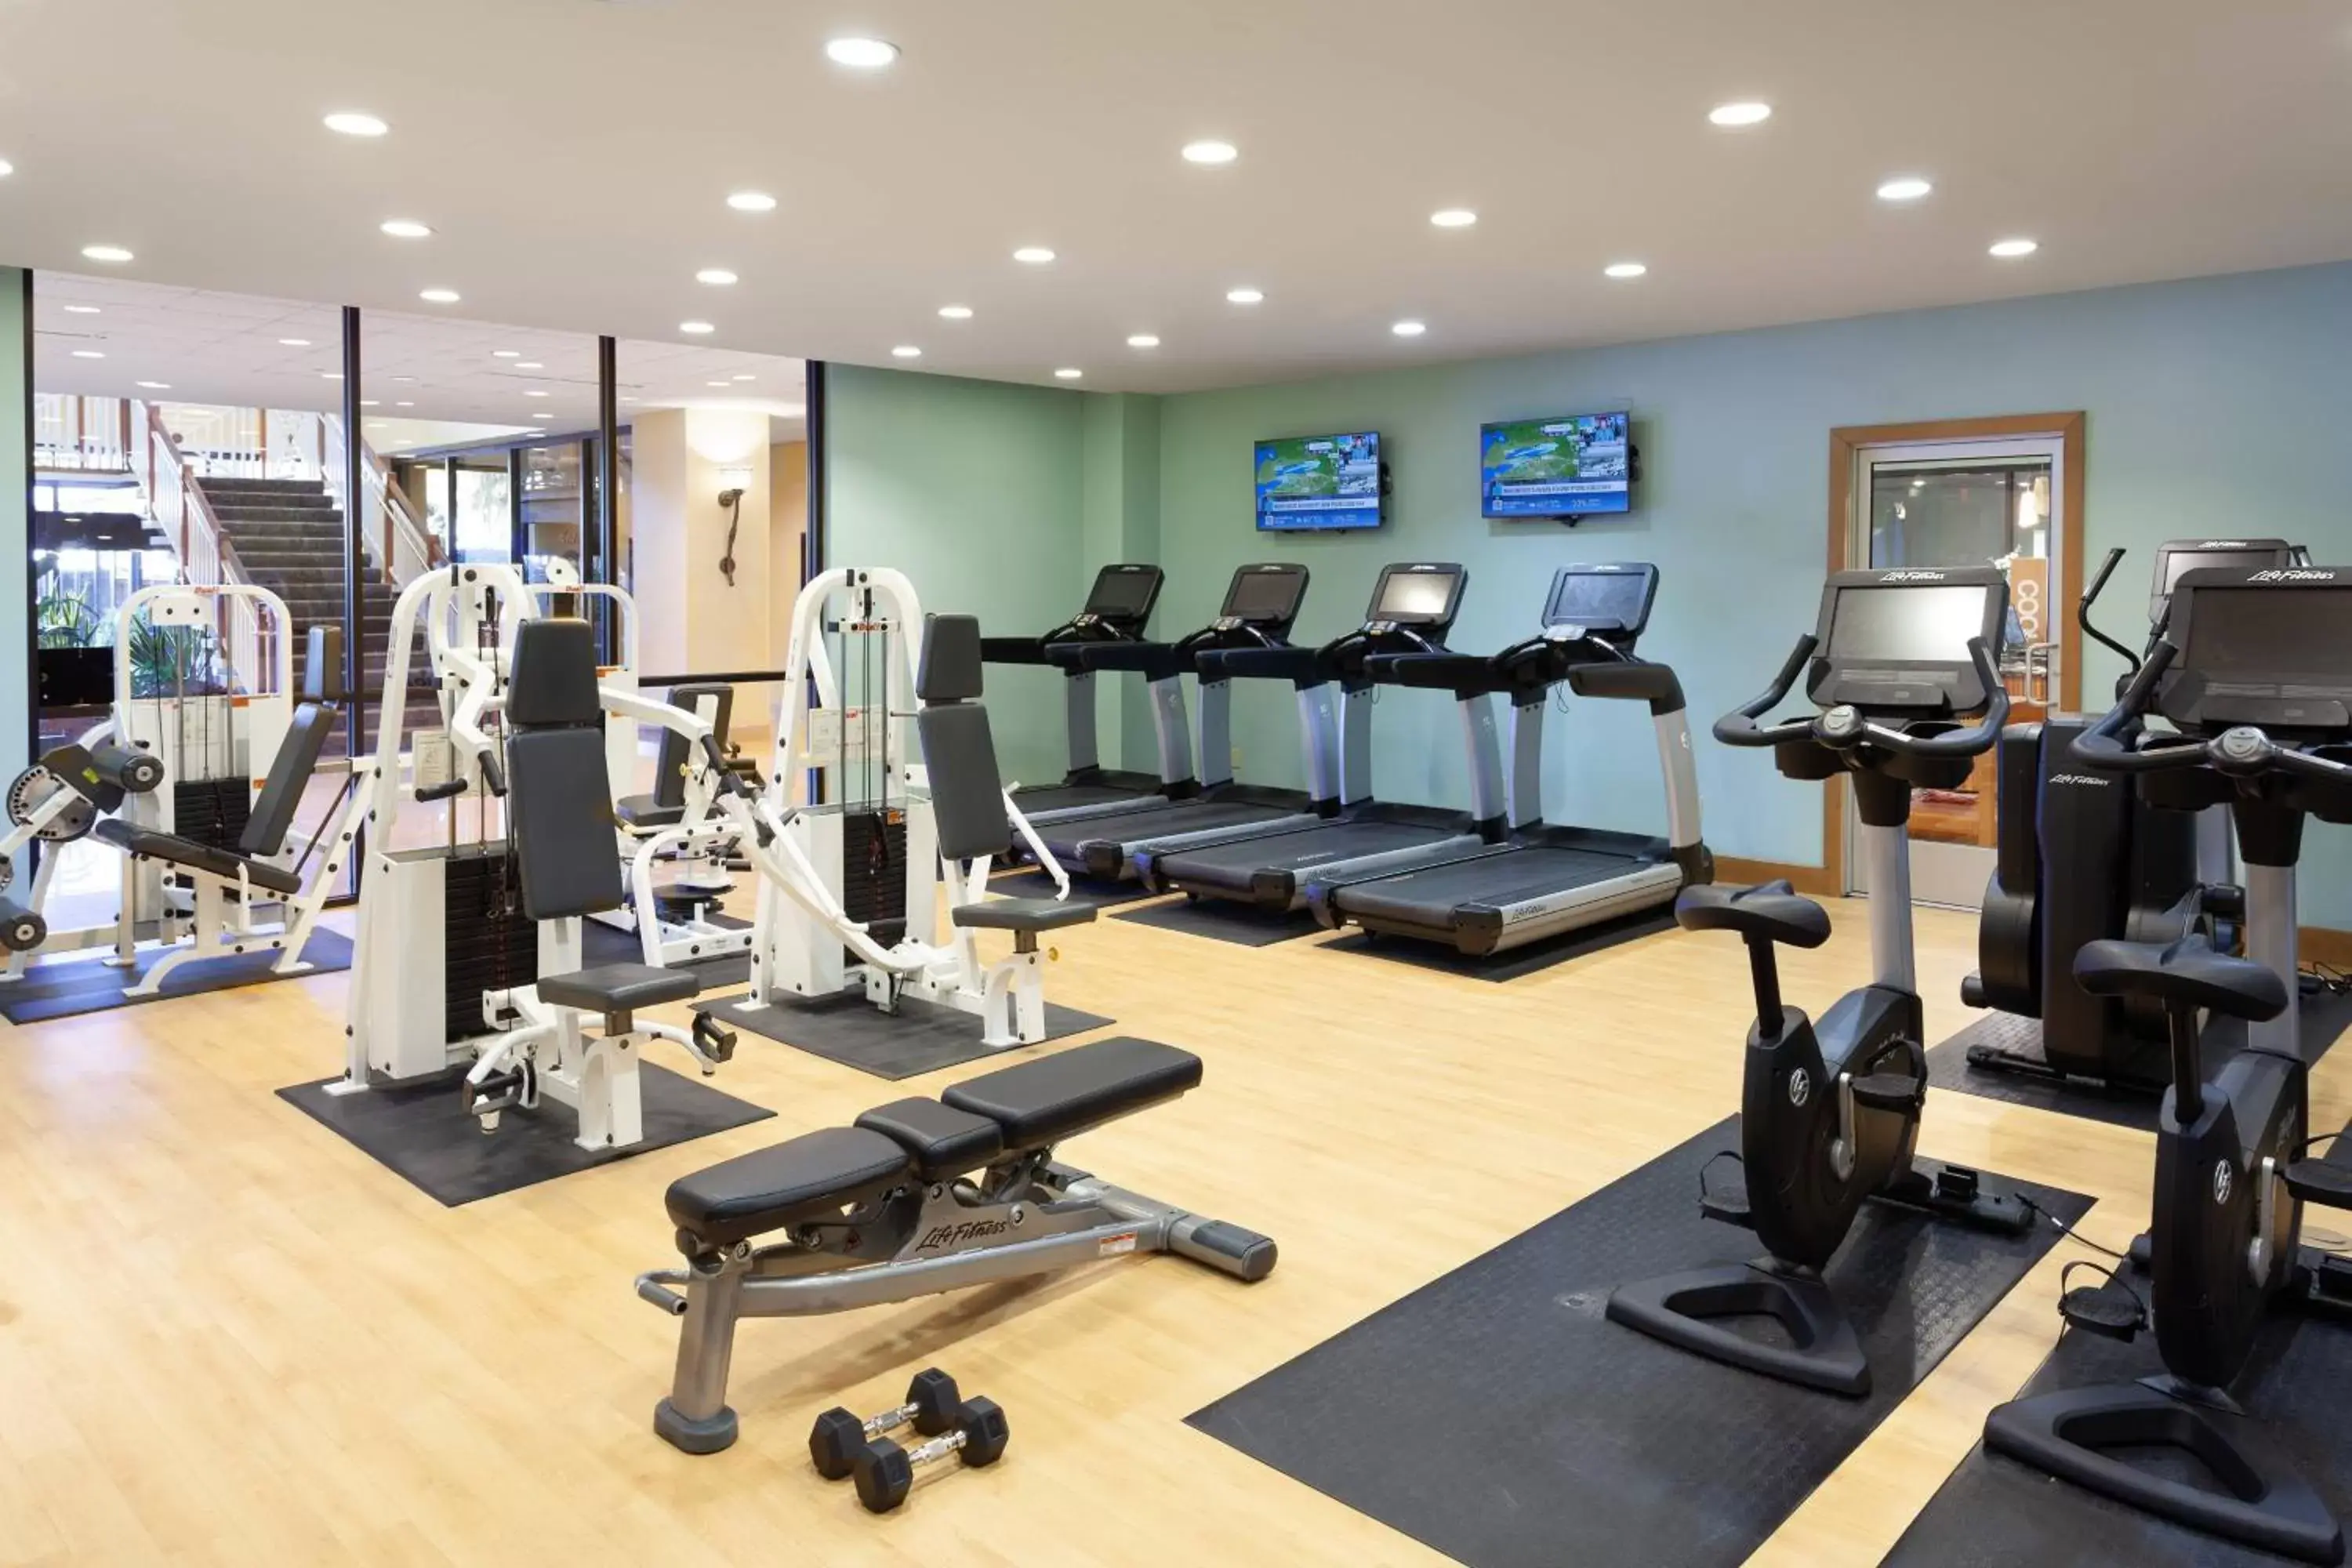 Fitness centre/facilities, Fitness Center/Facilities in Marriott Hilton Head Resort & Spa